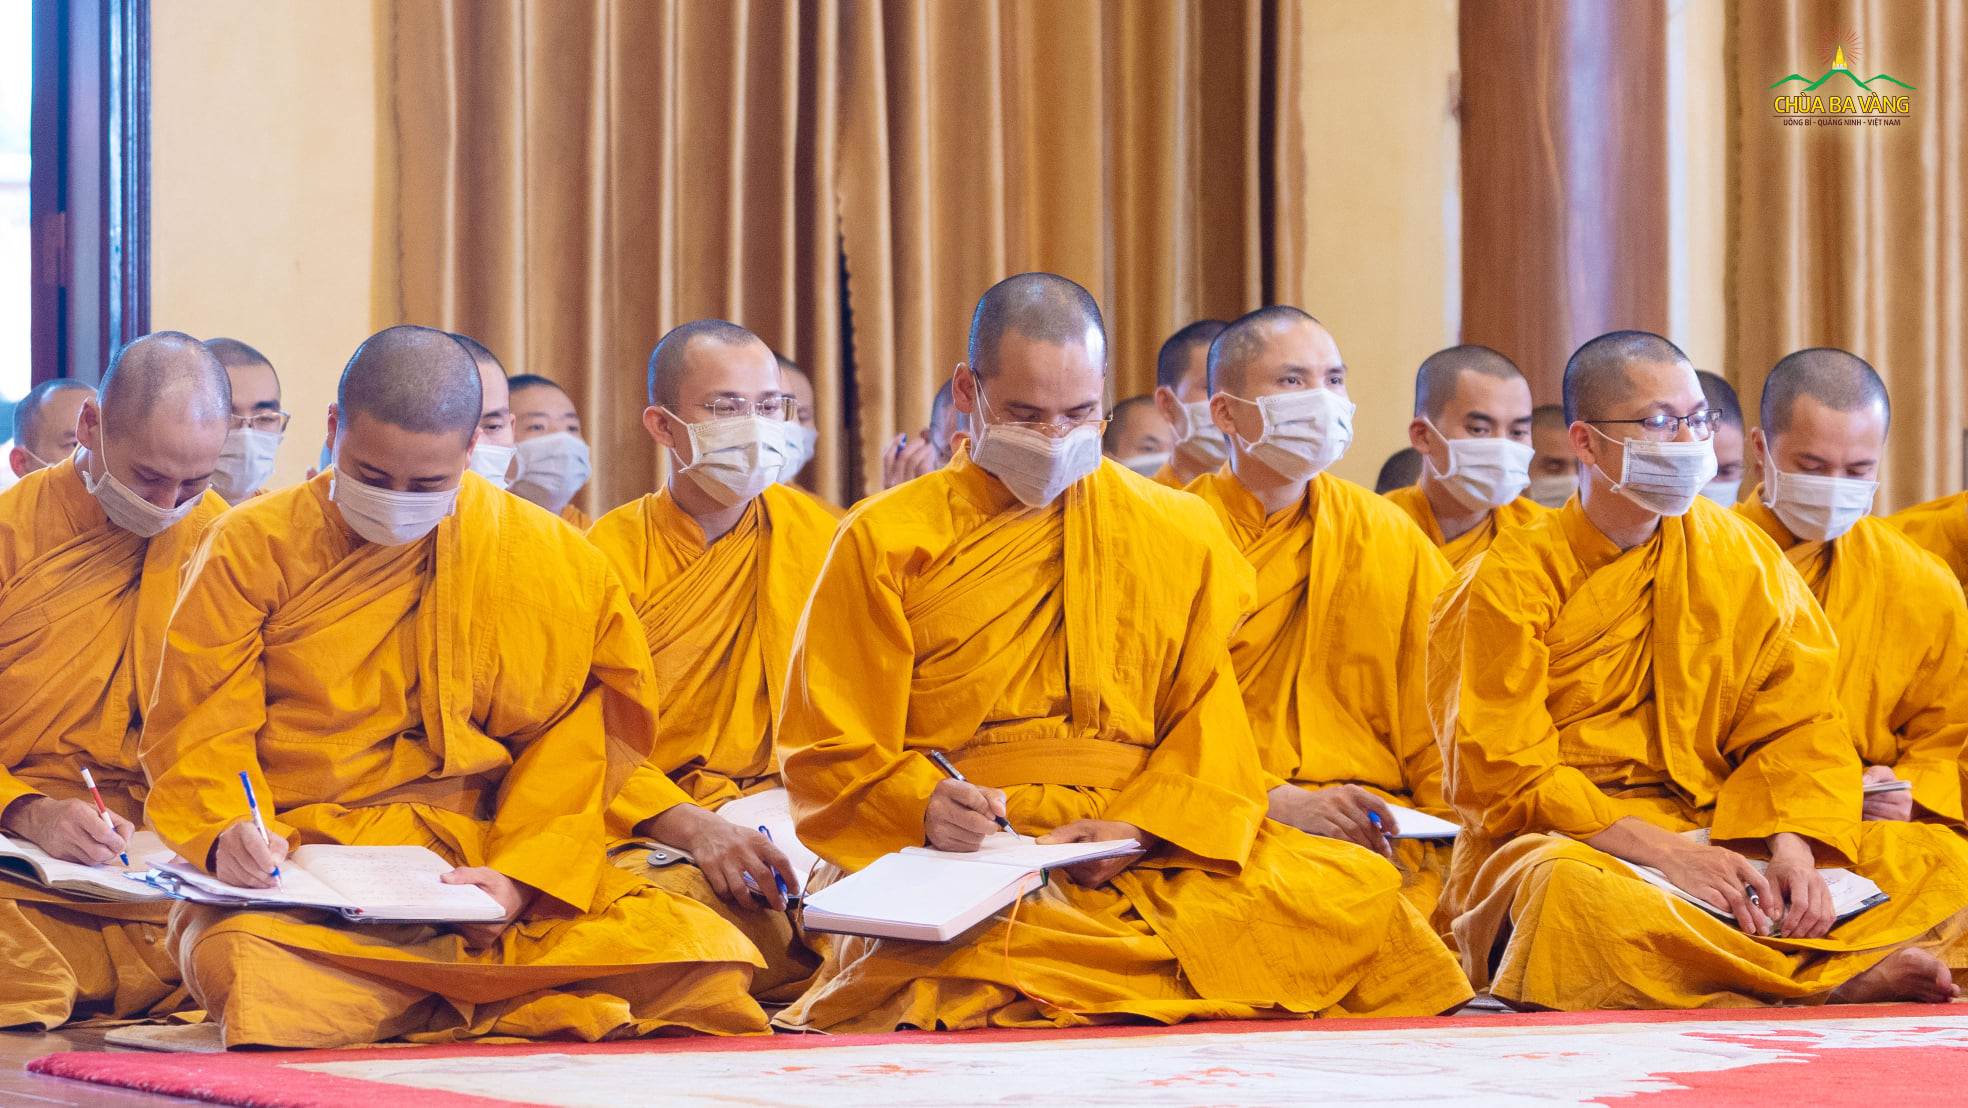 Chư Tăng chùa Ba Vàng ghi chép lại lời giảng của Sư Phụ Thích Trúc Thái Minh